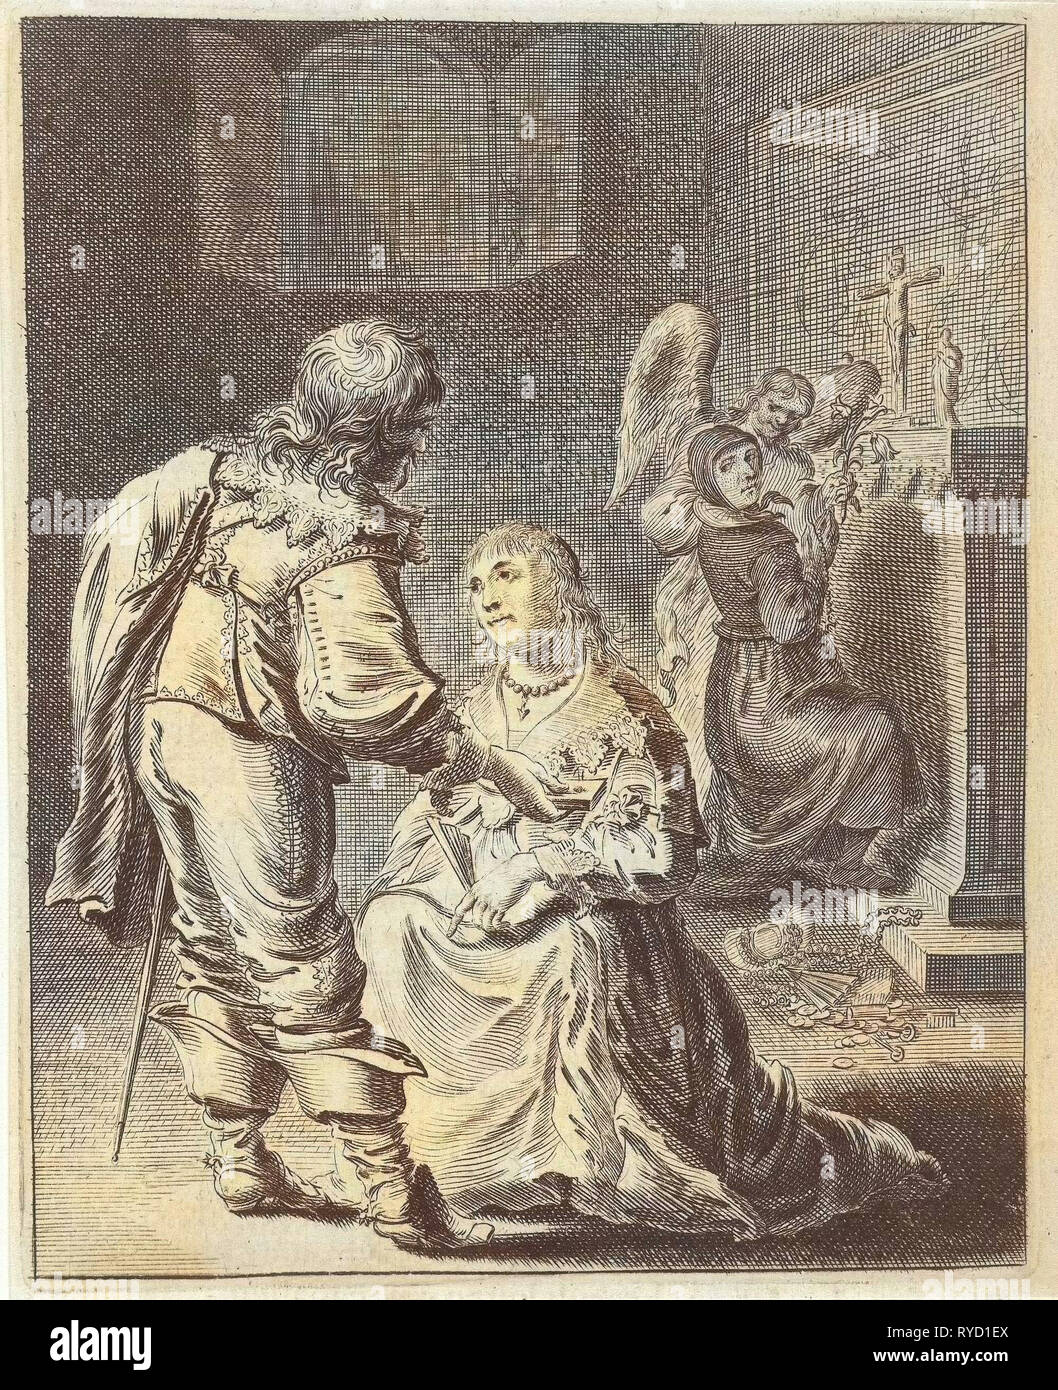 La purezza e la vanità, Pieter Nolpe, 1640 Foto Stock